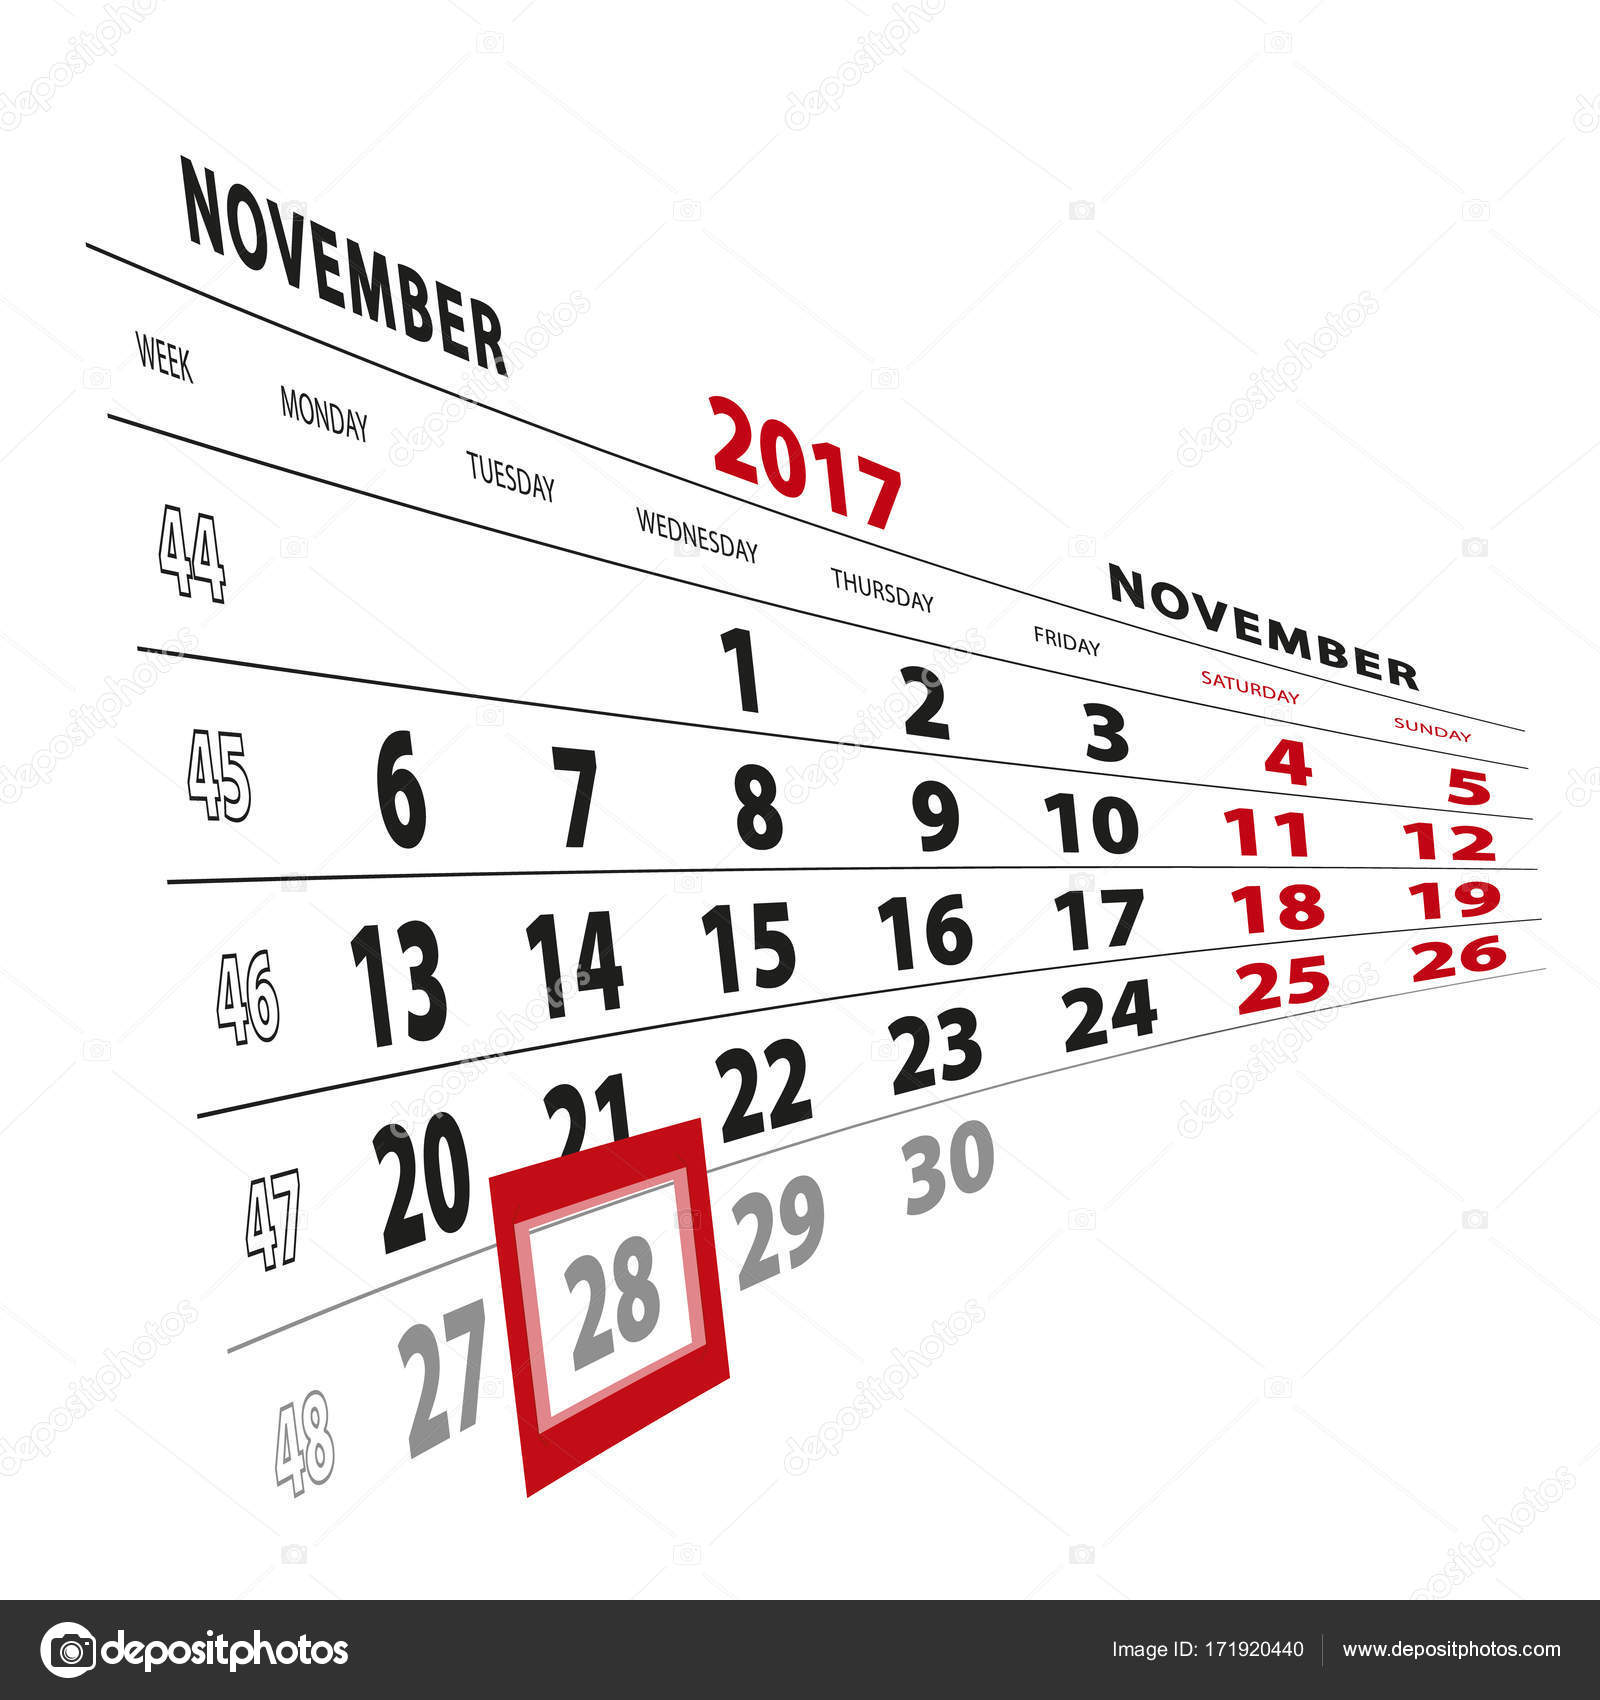 11 月 28 日カレンダー 17 で強調表示されます 週は月曜日から開始します ストックベクター C Boldg